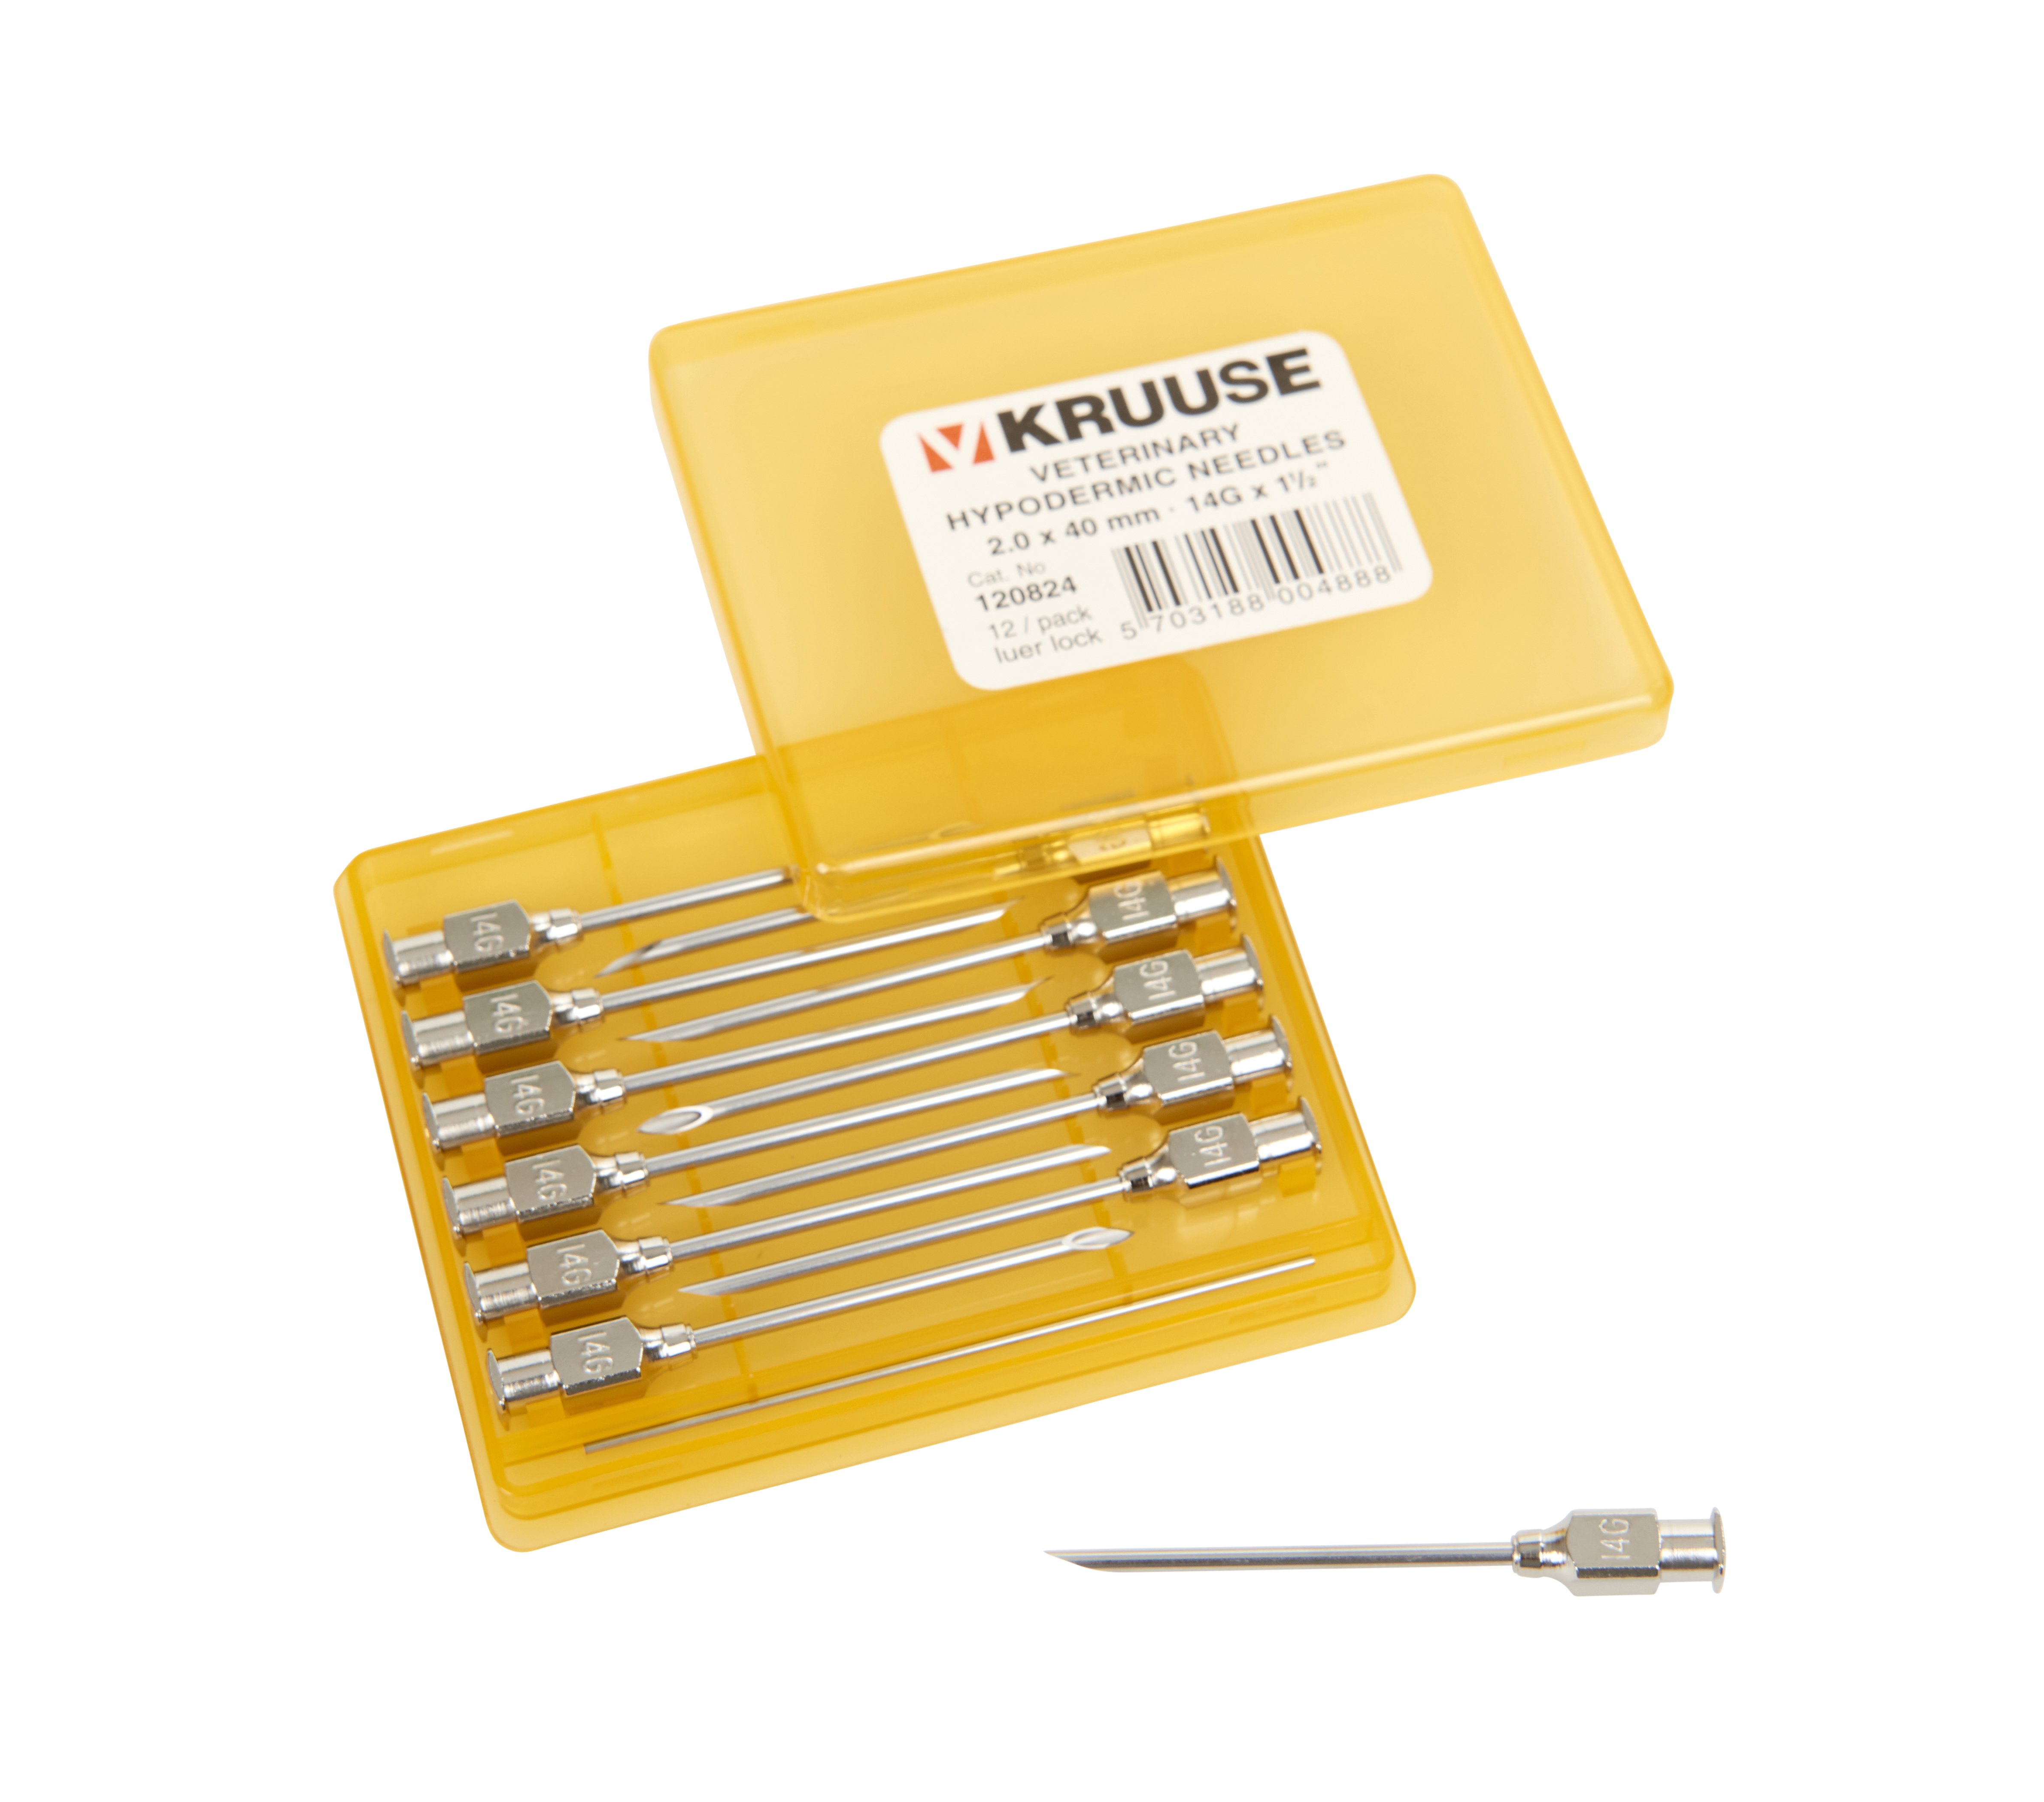 KRUUSE-Vet needles 2.0x40 mm, luer lock, 12/pk